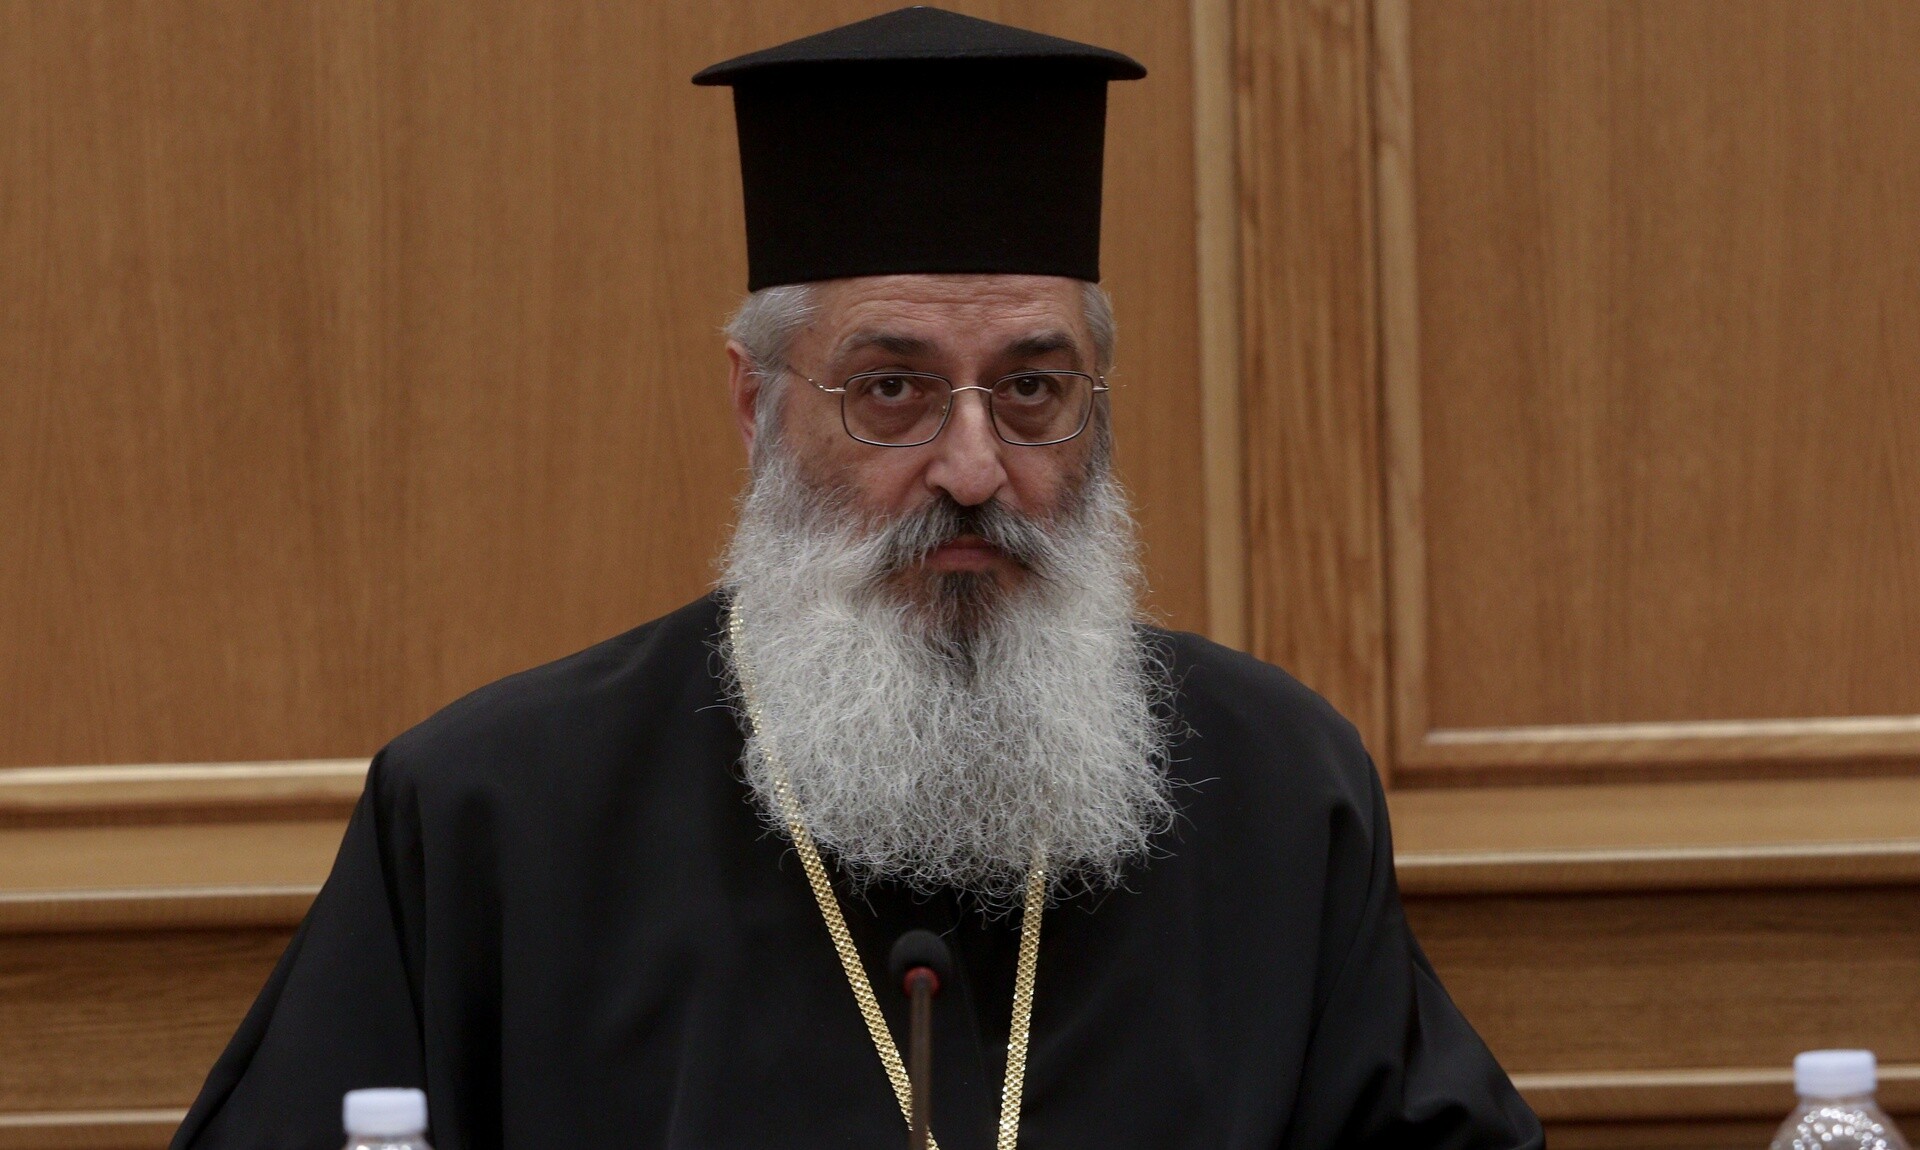 Μετά τον Αρχιεπίσκοπο: Νέο fake διαφημιστικό βίντεο με τον Μητροπολίτη Αλεξανδρουπόλεως στο TikTok